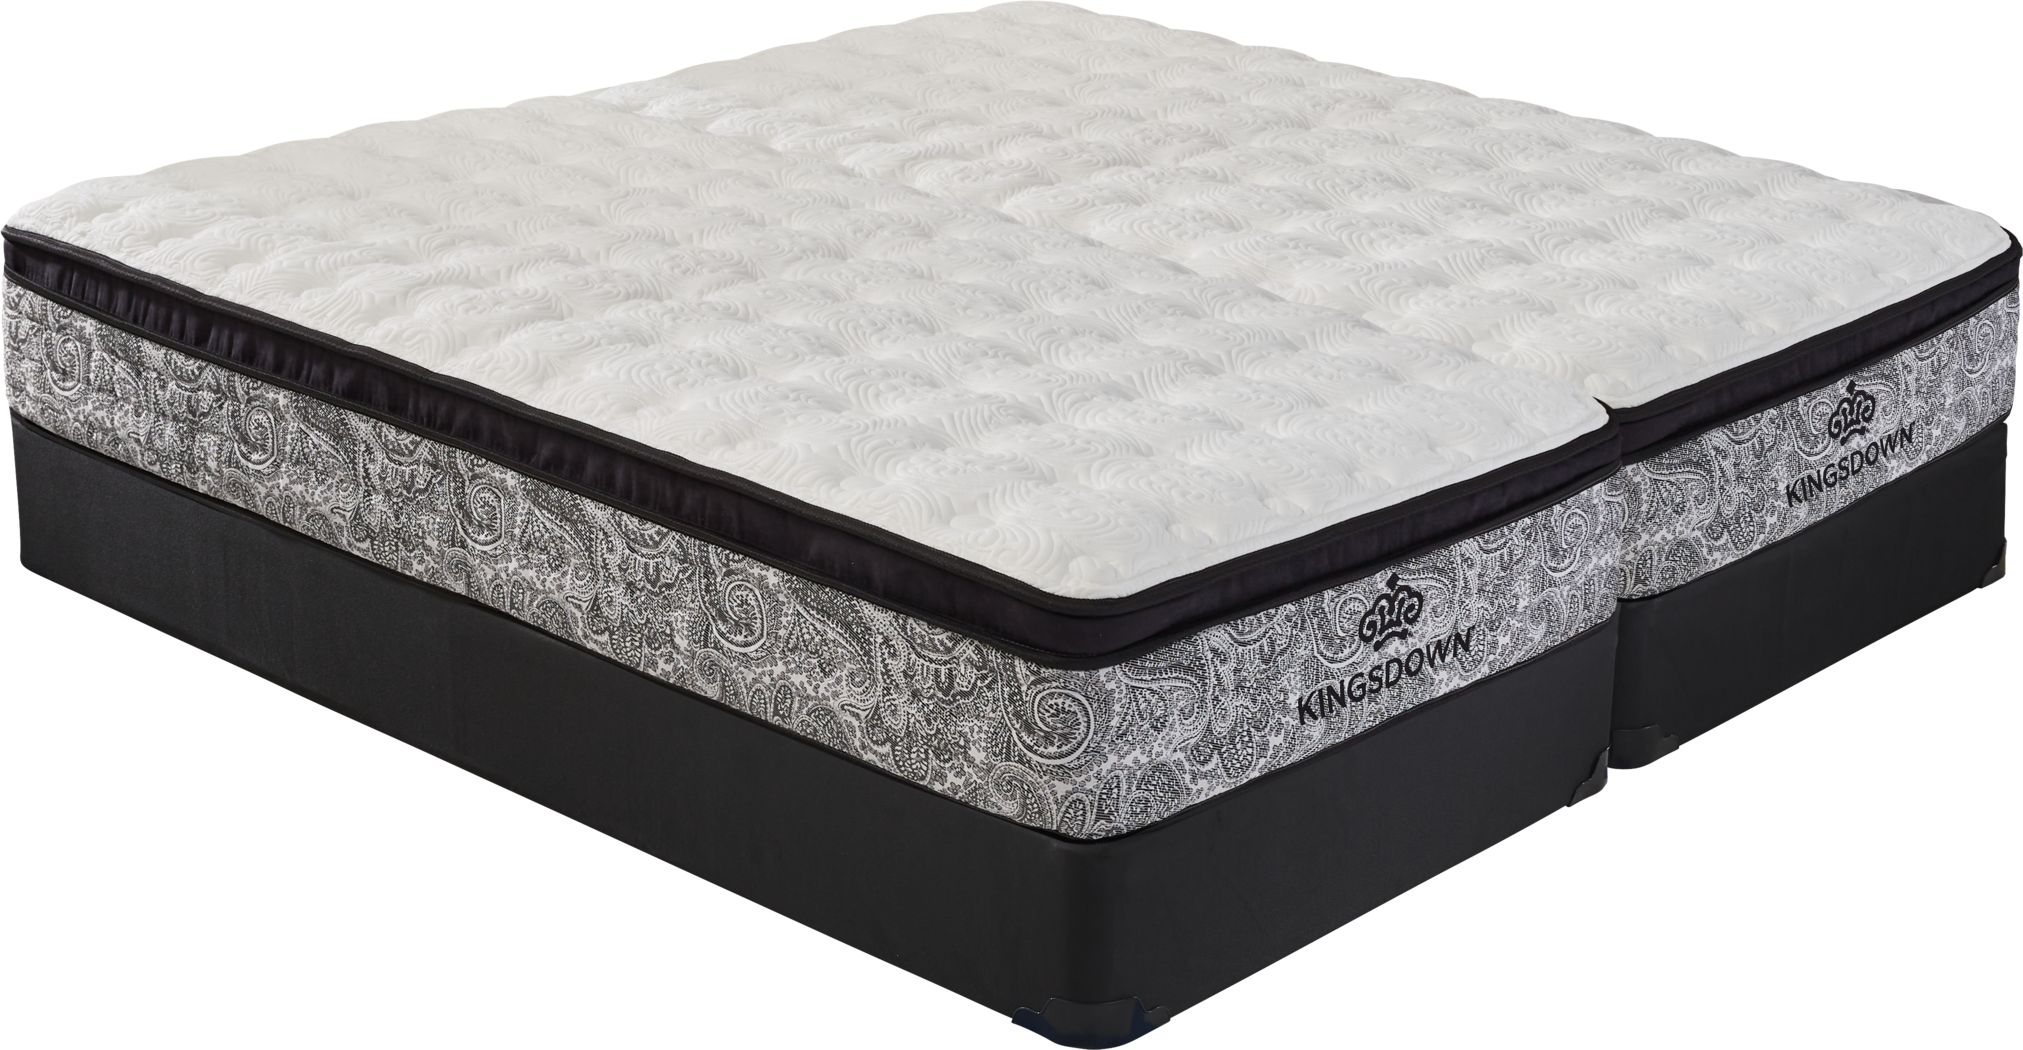 low profile king size mattress set